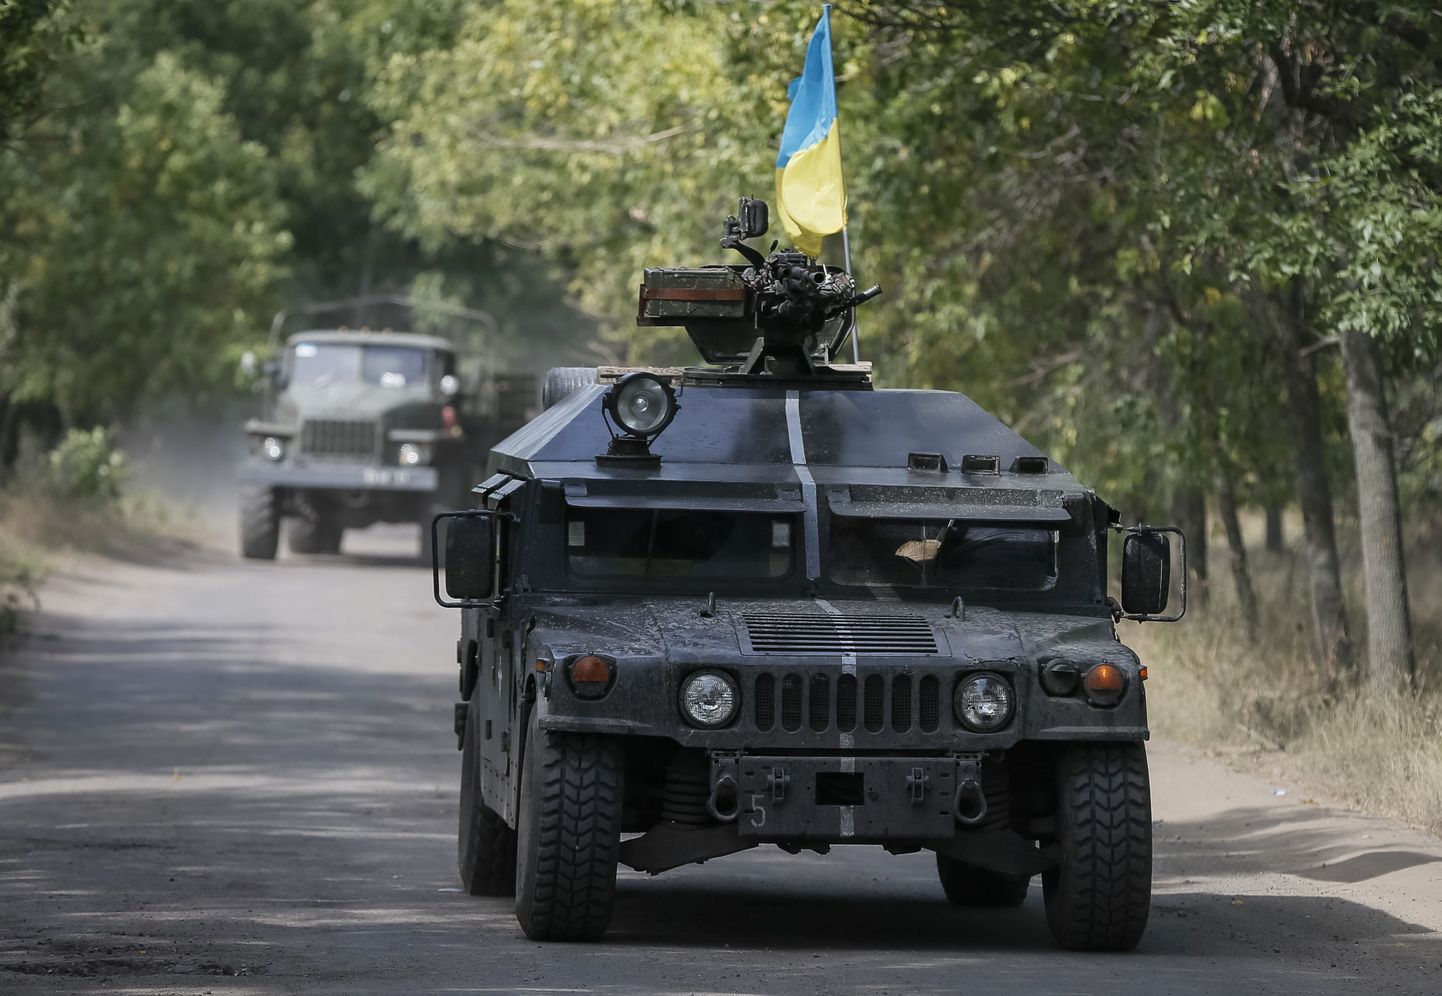 Ukraina sõdurid 1. septembril Kramatorskis (Donetski oblast).